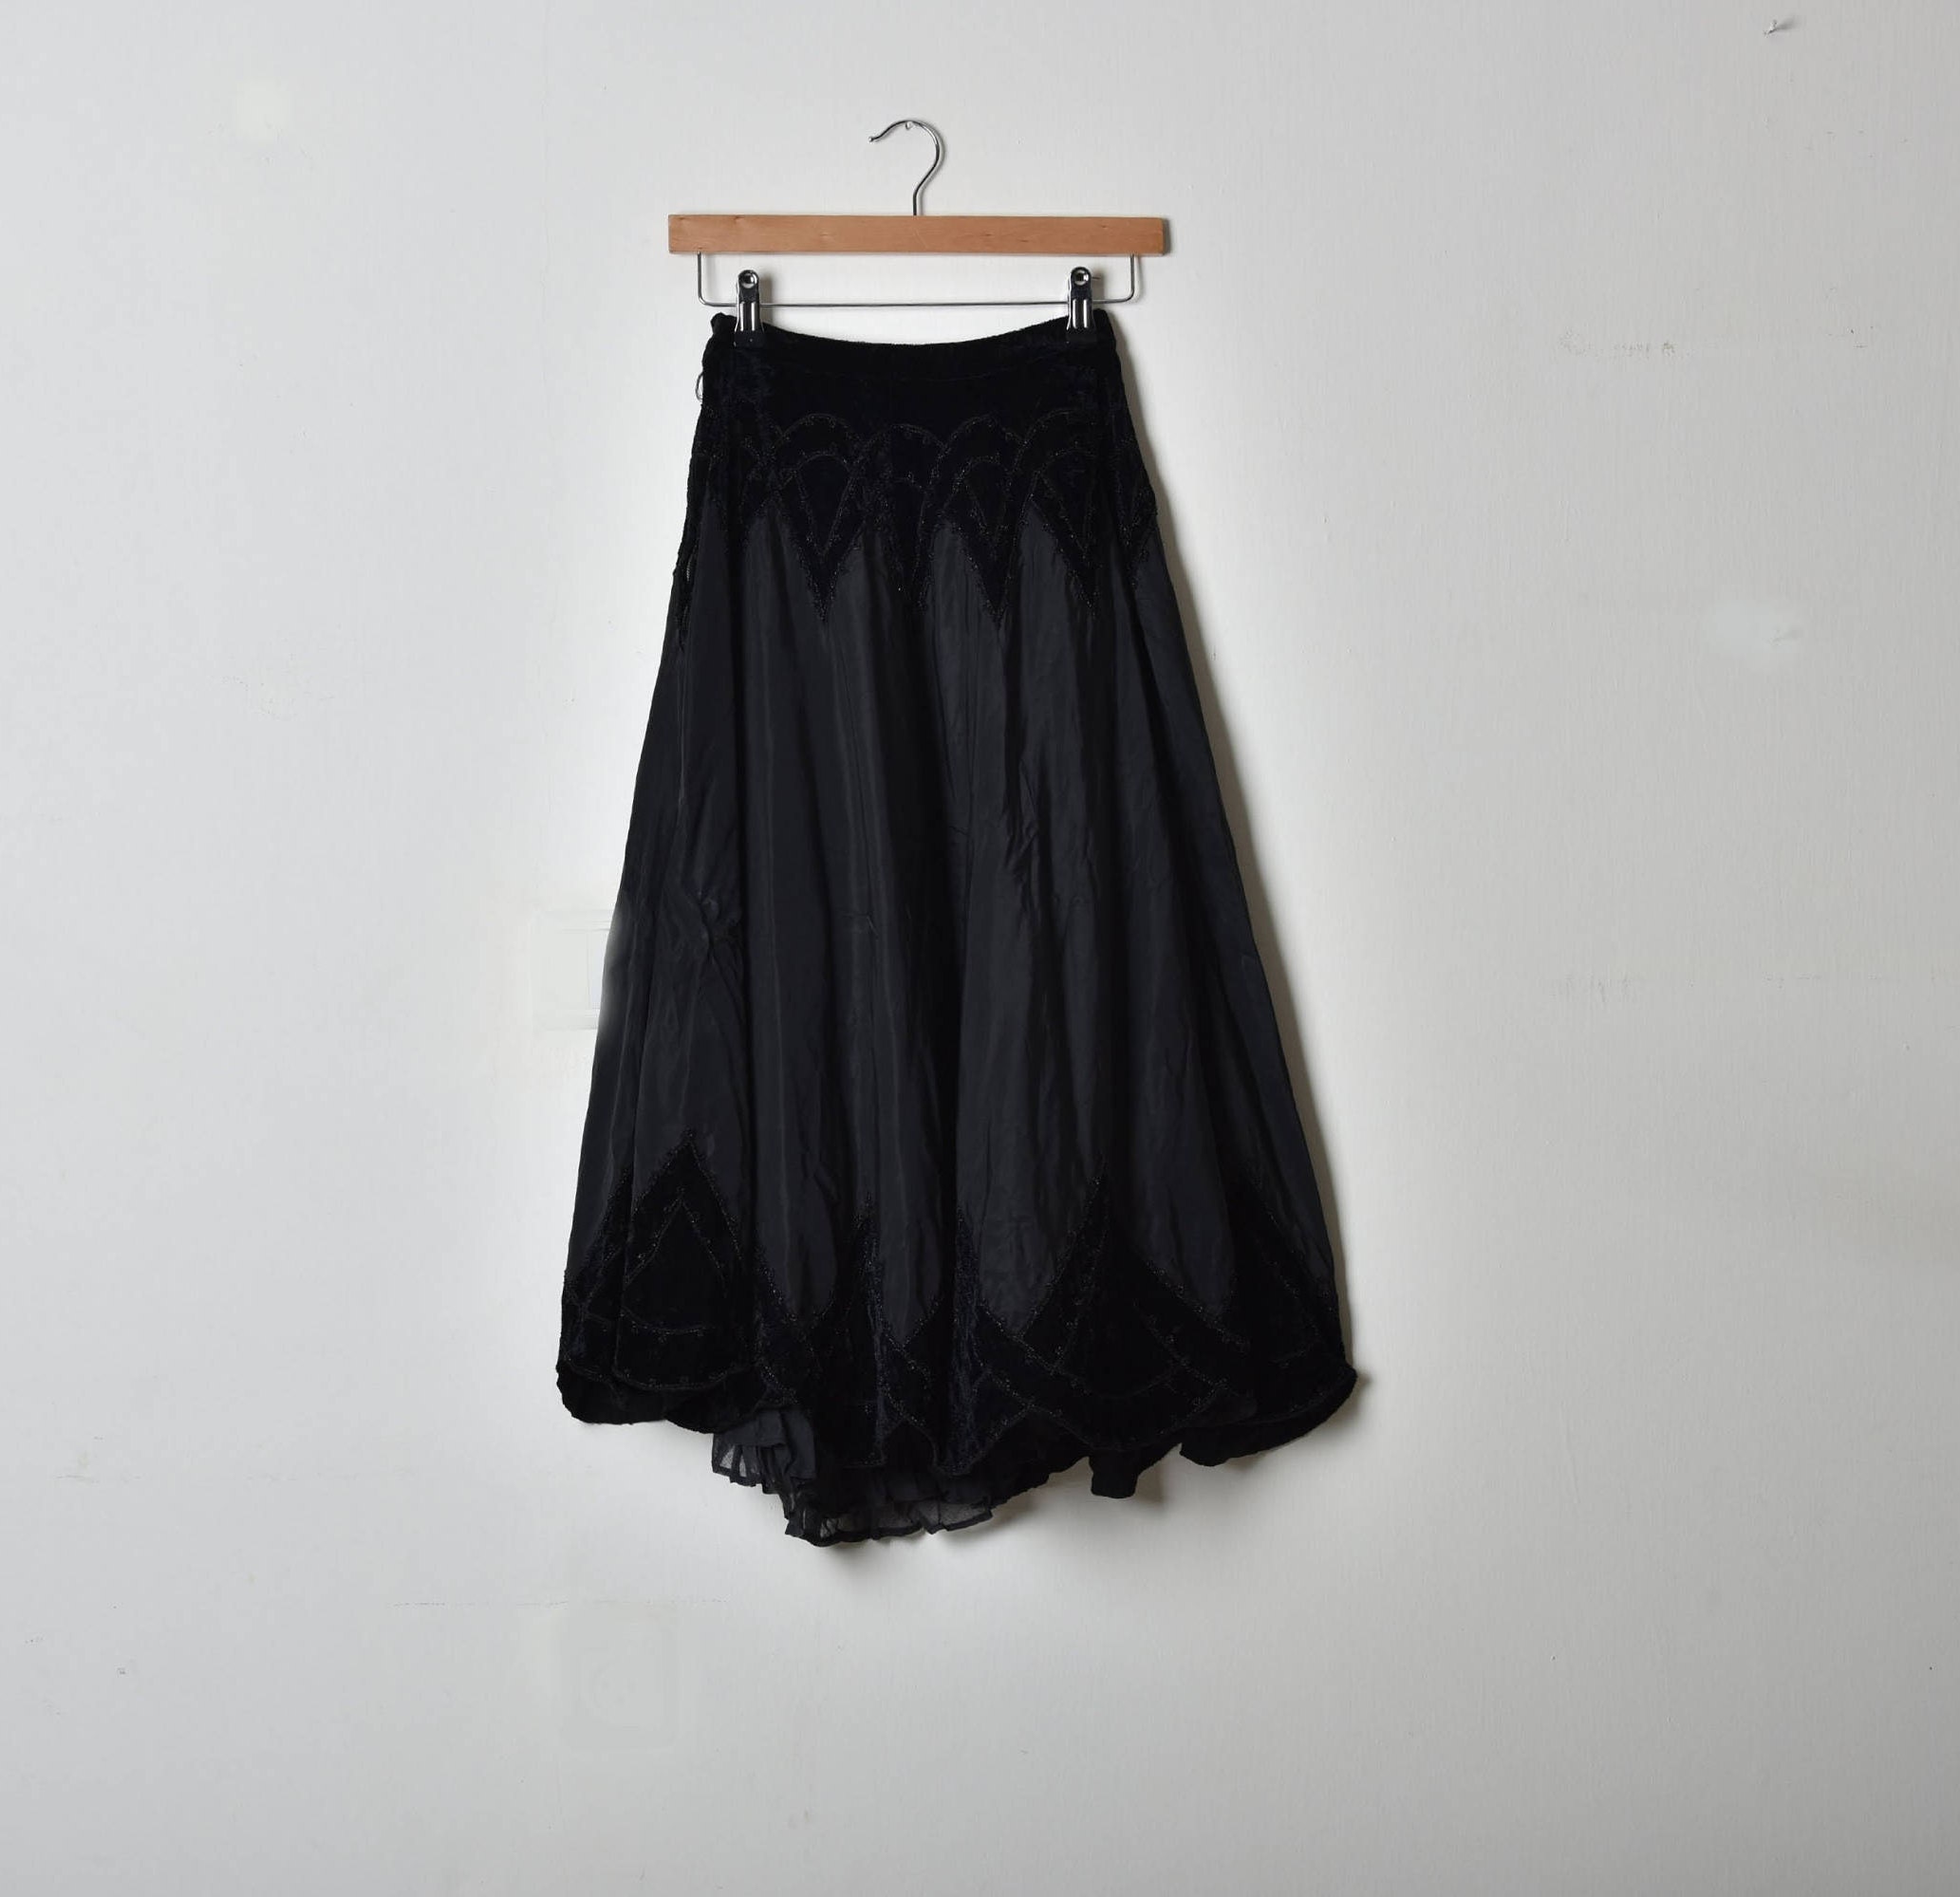 Long Black Skirt Flared Skirt Full Circle Skirt Midi Skirt - Etsy UK